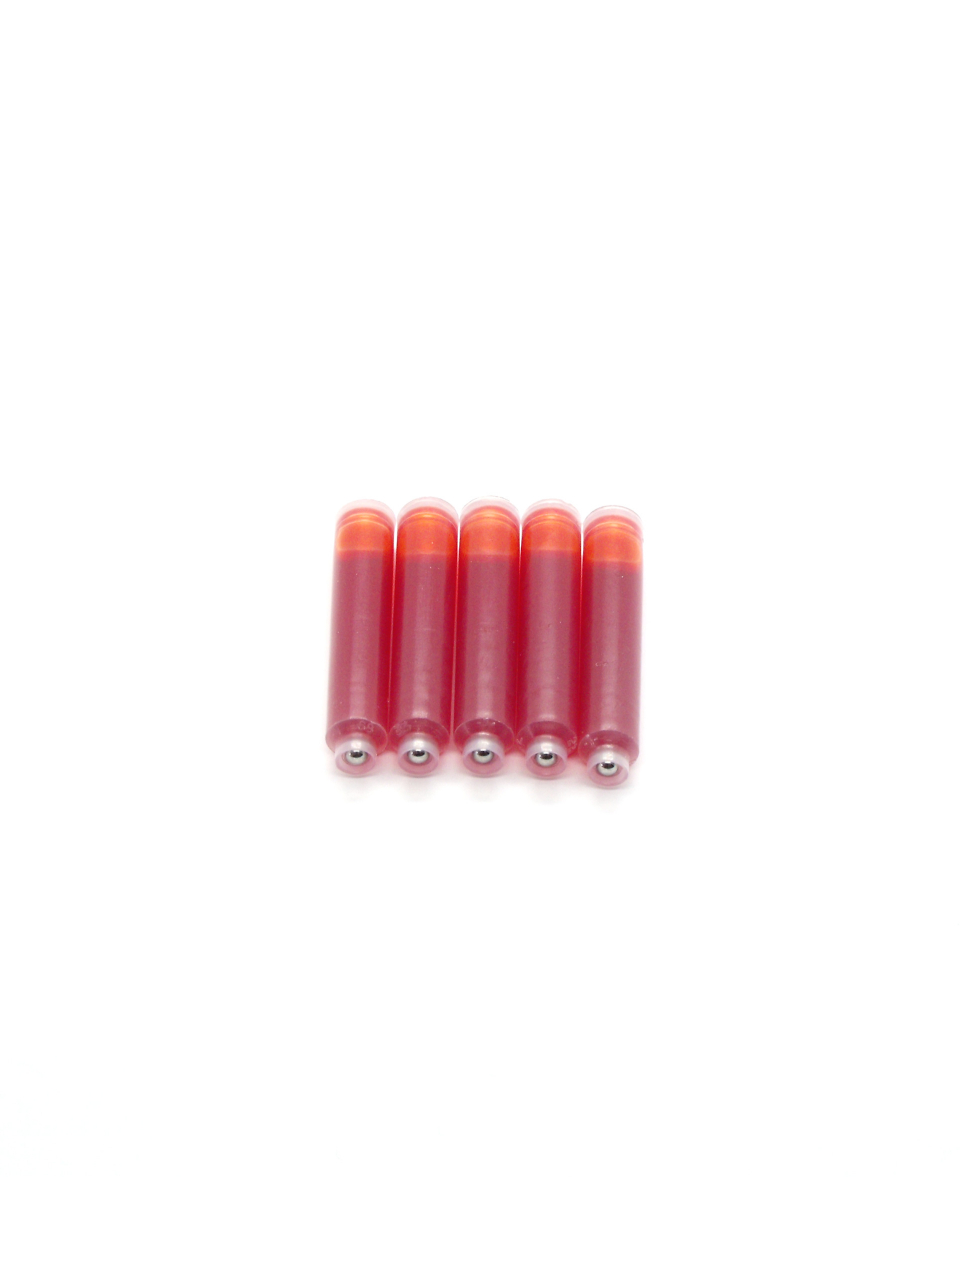 Top Ink Cartridges For Sheaffer VFM Fountain Pens (Orange)